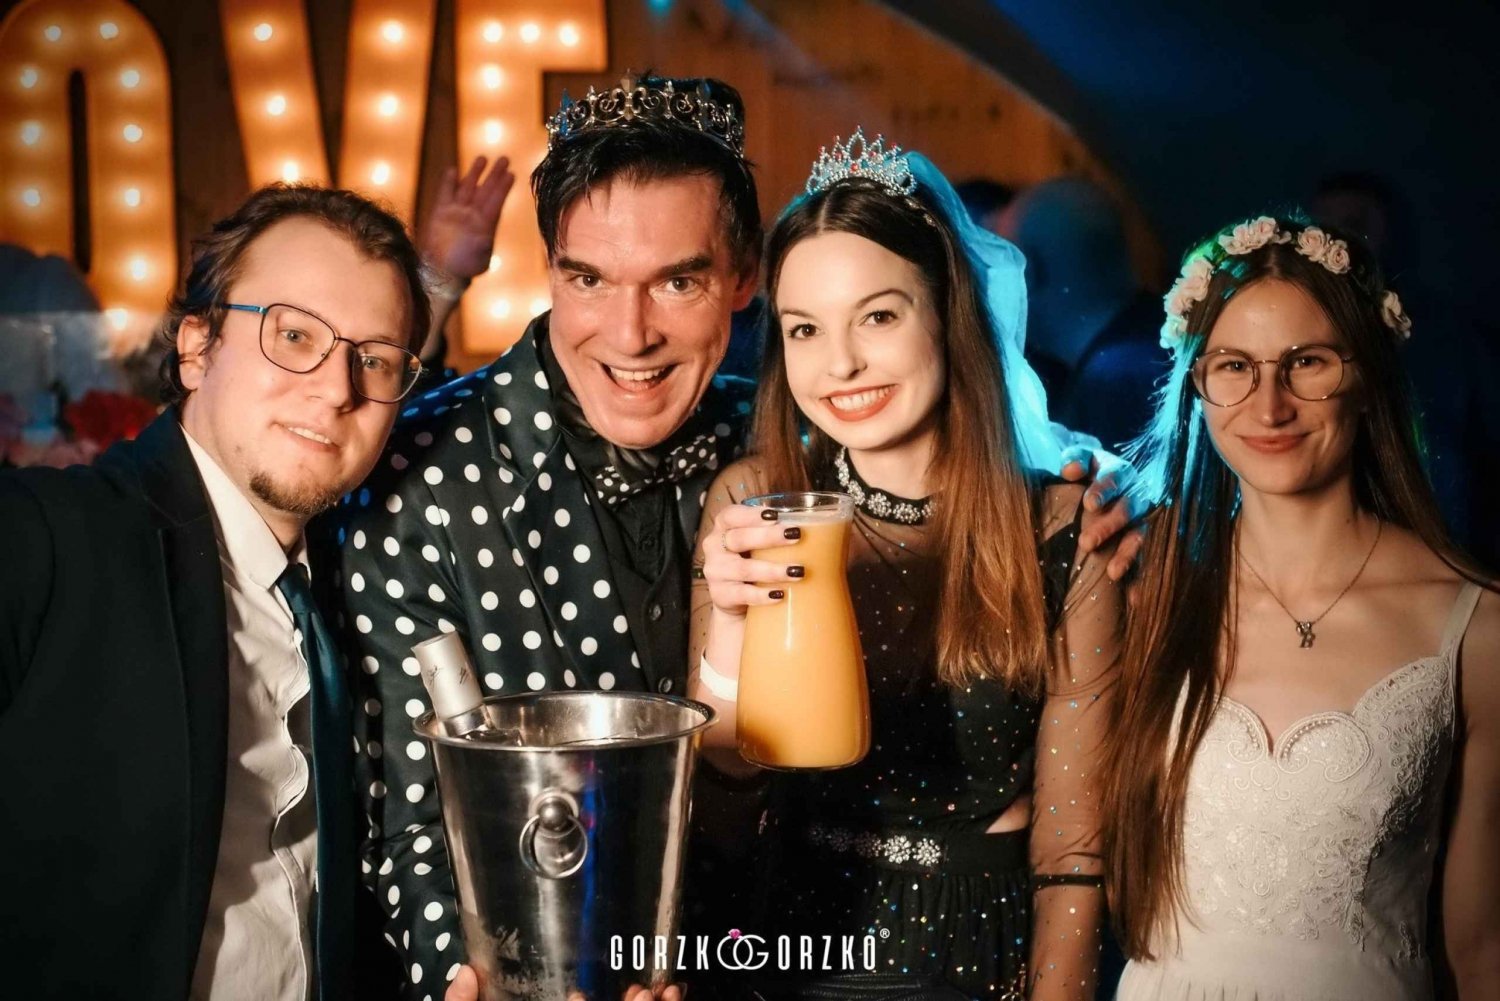 Danzica: Festa di matrimonio polacca con drink di benvenuto